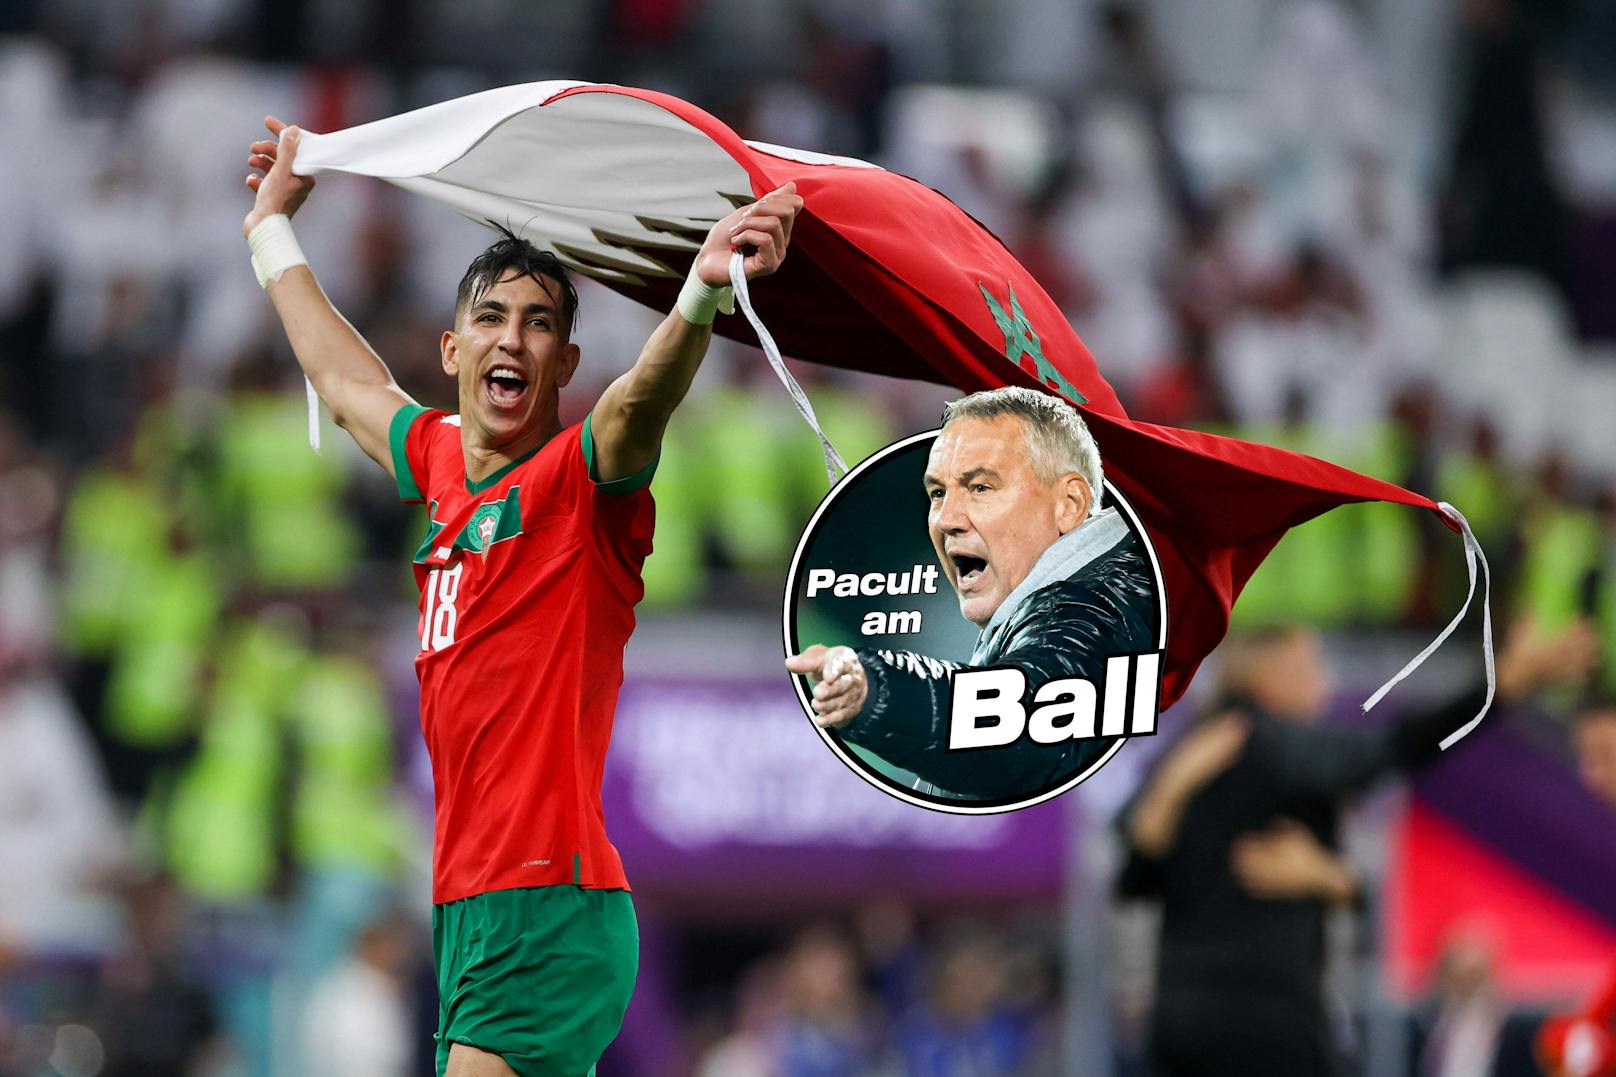 Pacult: "Weltmeister Marokko? Das kann passieren!"